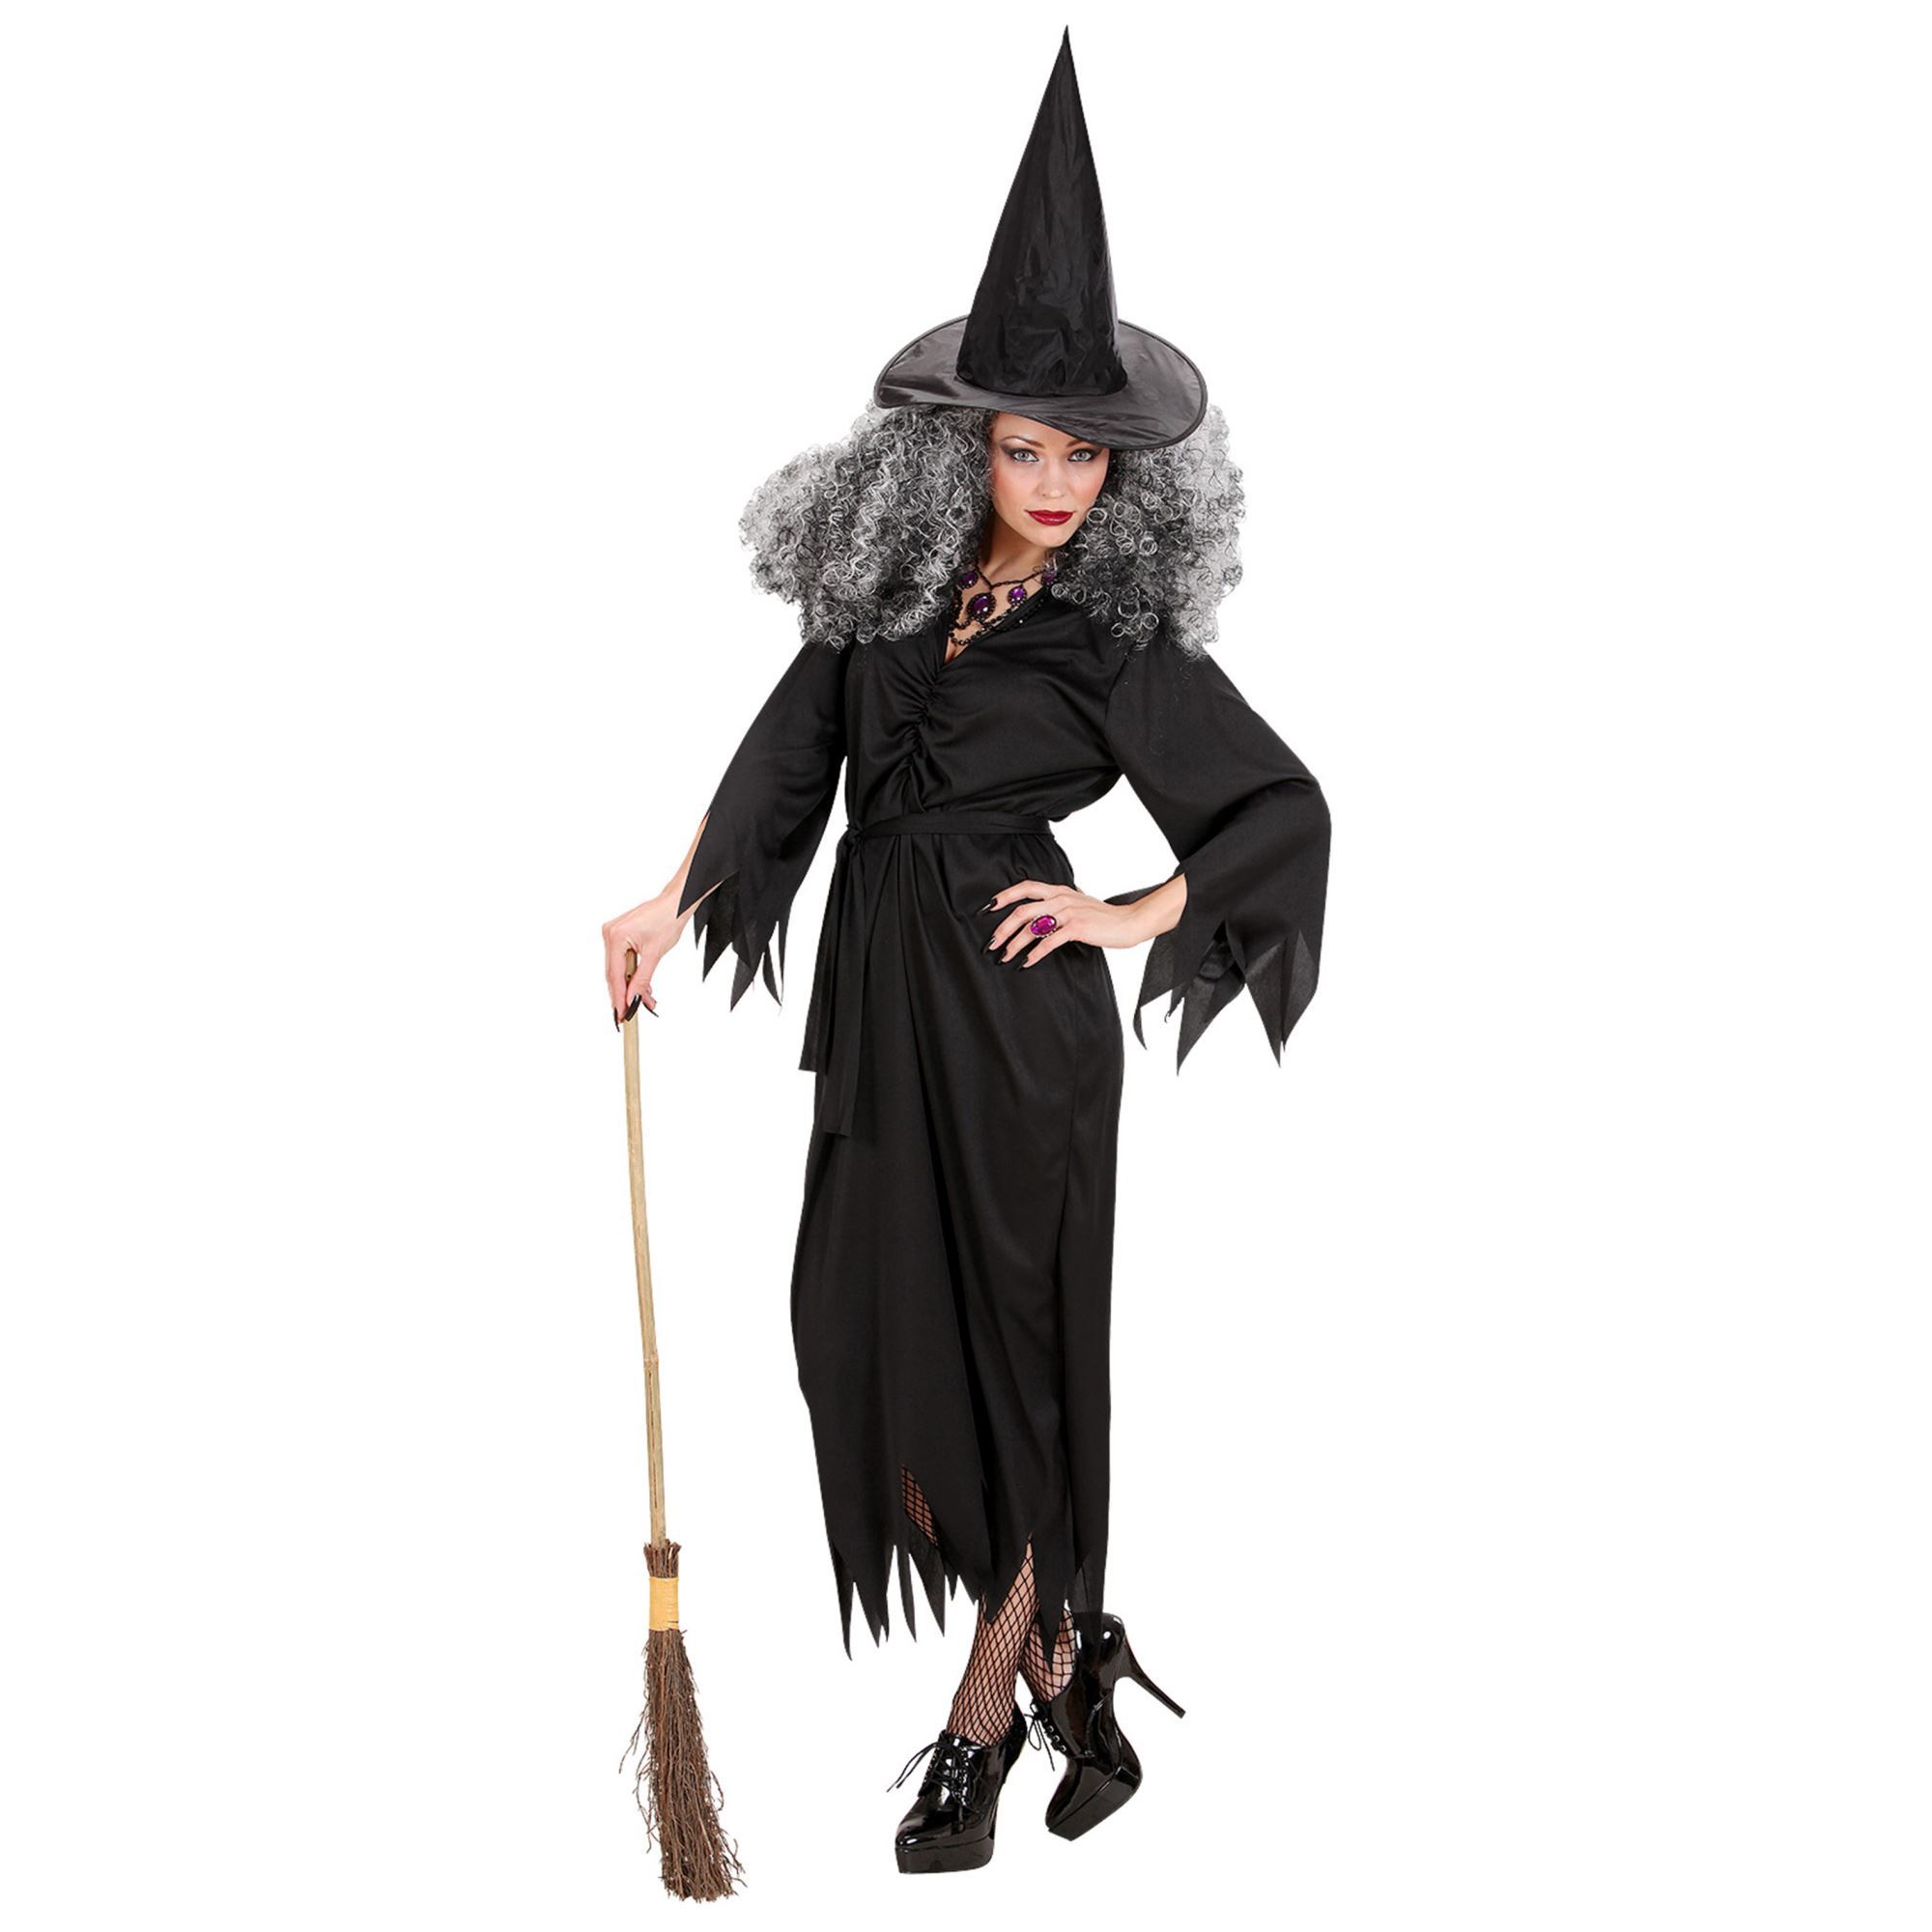 Heksen jurk zwart dame black witch